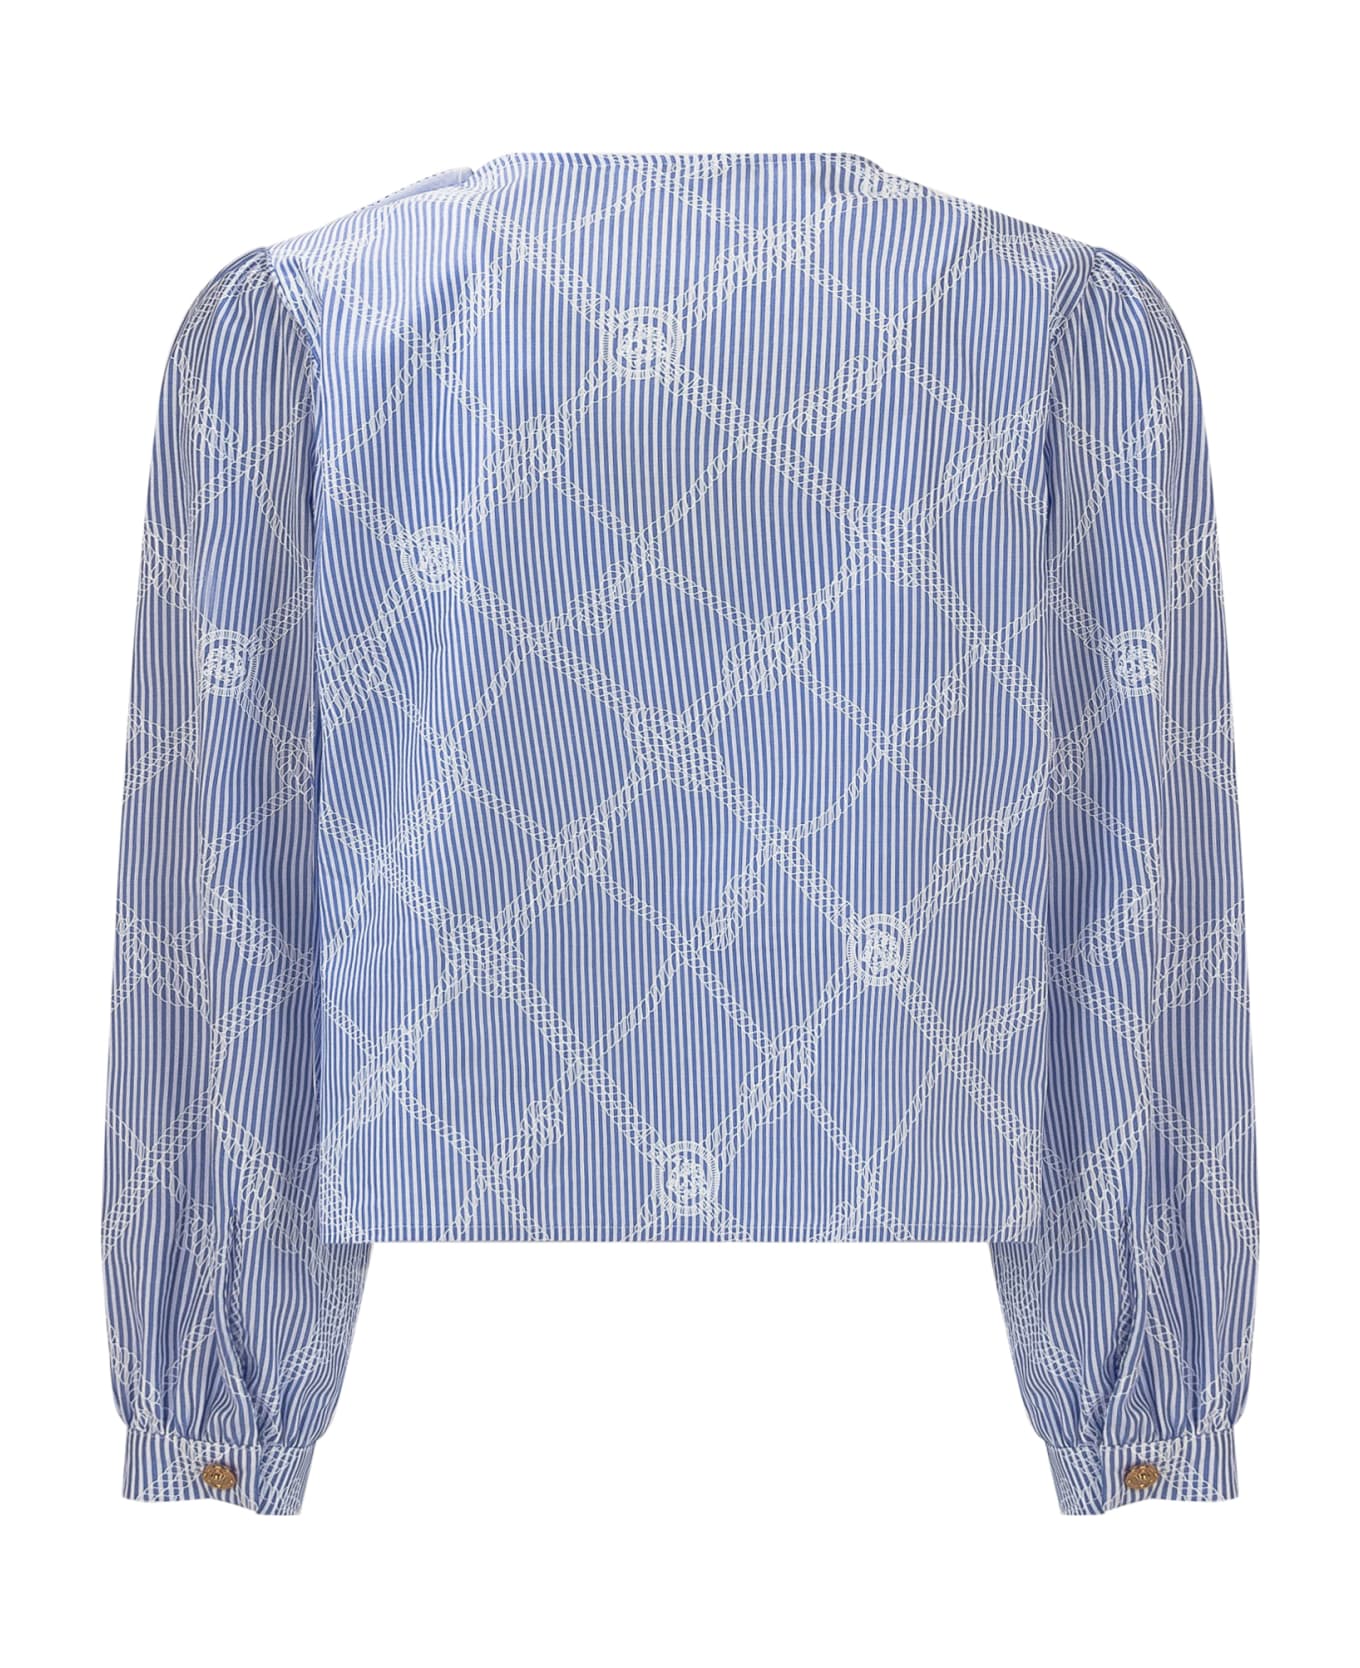 Versace Nautical Medusa Shirt - BIANCO-CELESTE シャツ